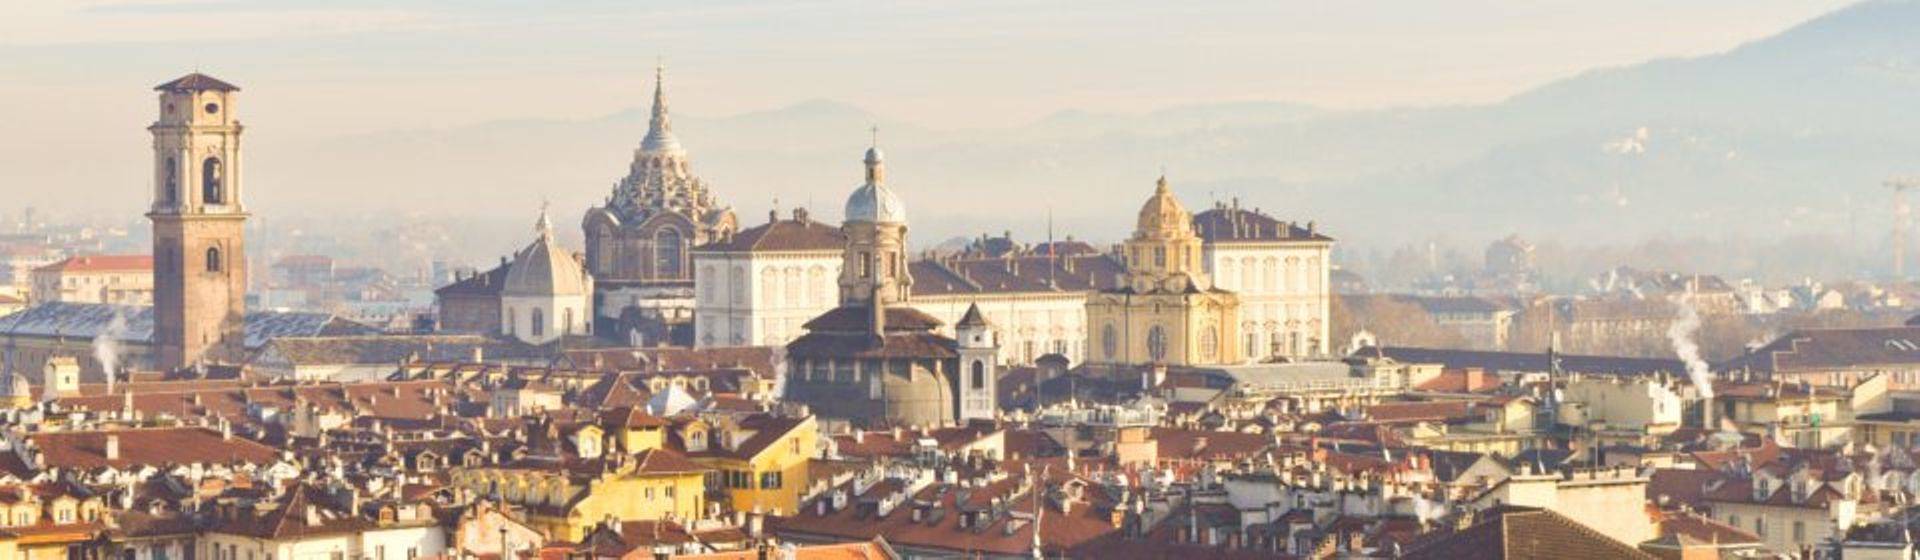 Holidays to Turin Image